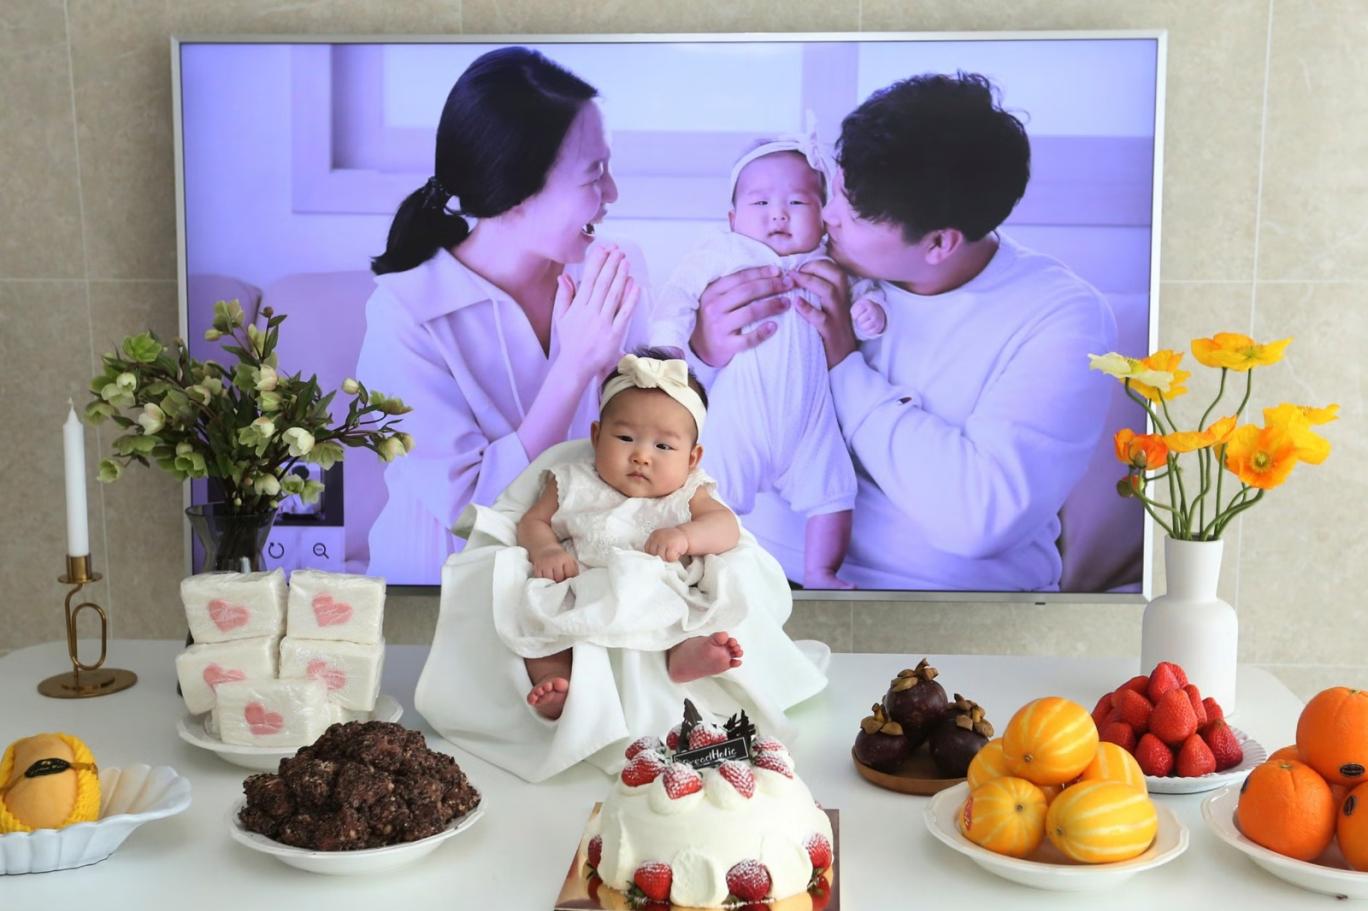 Güney Kore yurttaşlarına doğacak bebek başına "milyonluk" teşvik vermeyi değerlendiriyor